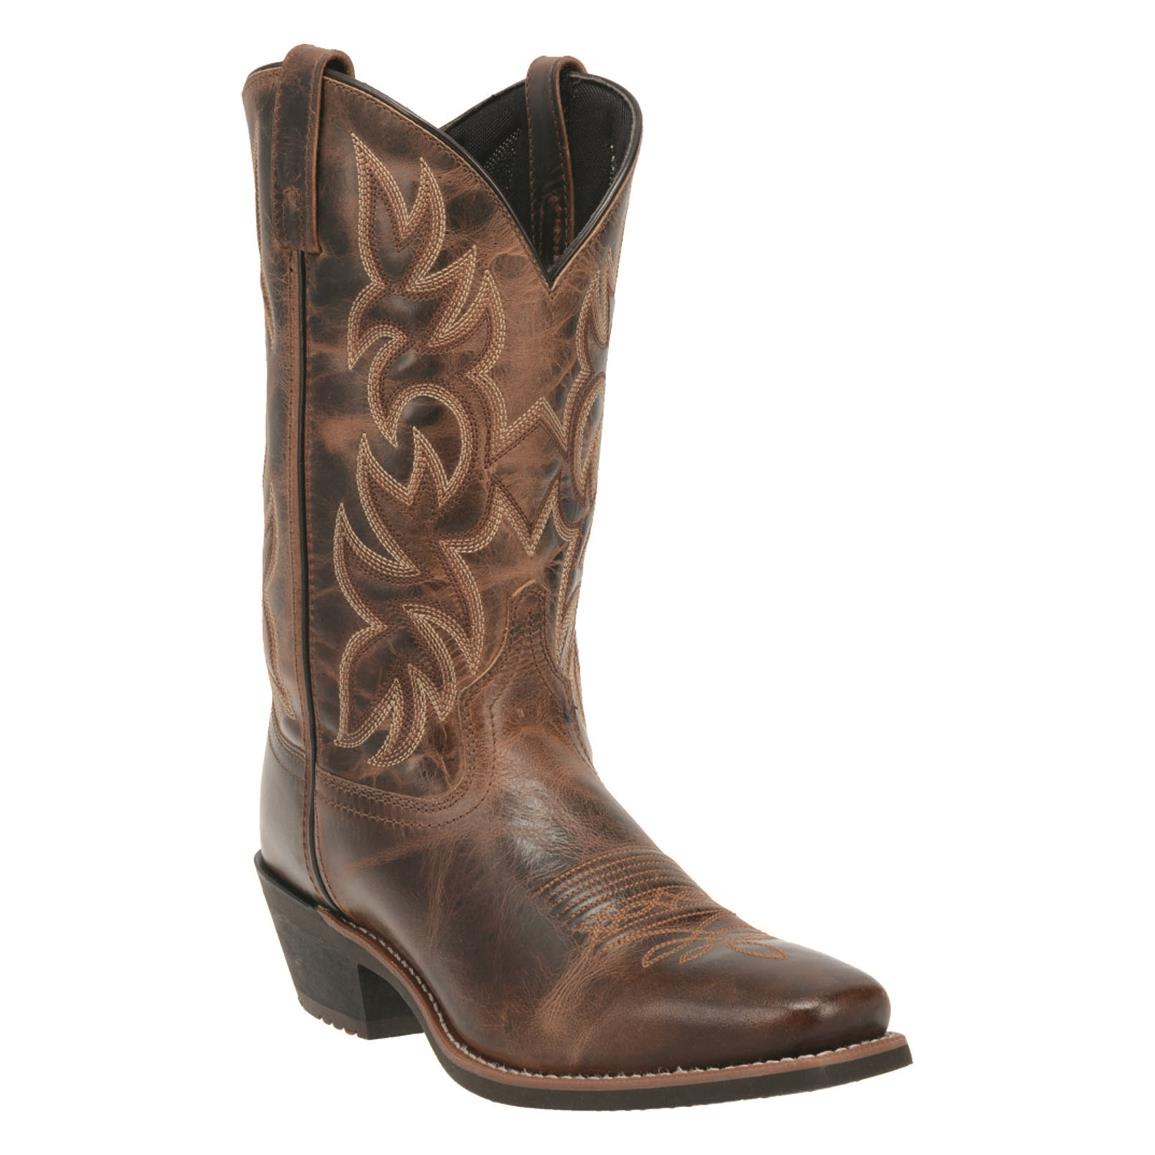 Laredo Men's Breakout Leather Western Boots, Rust